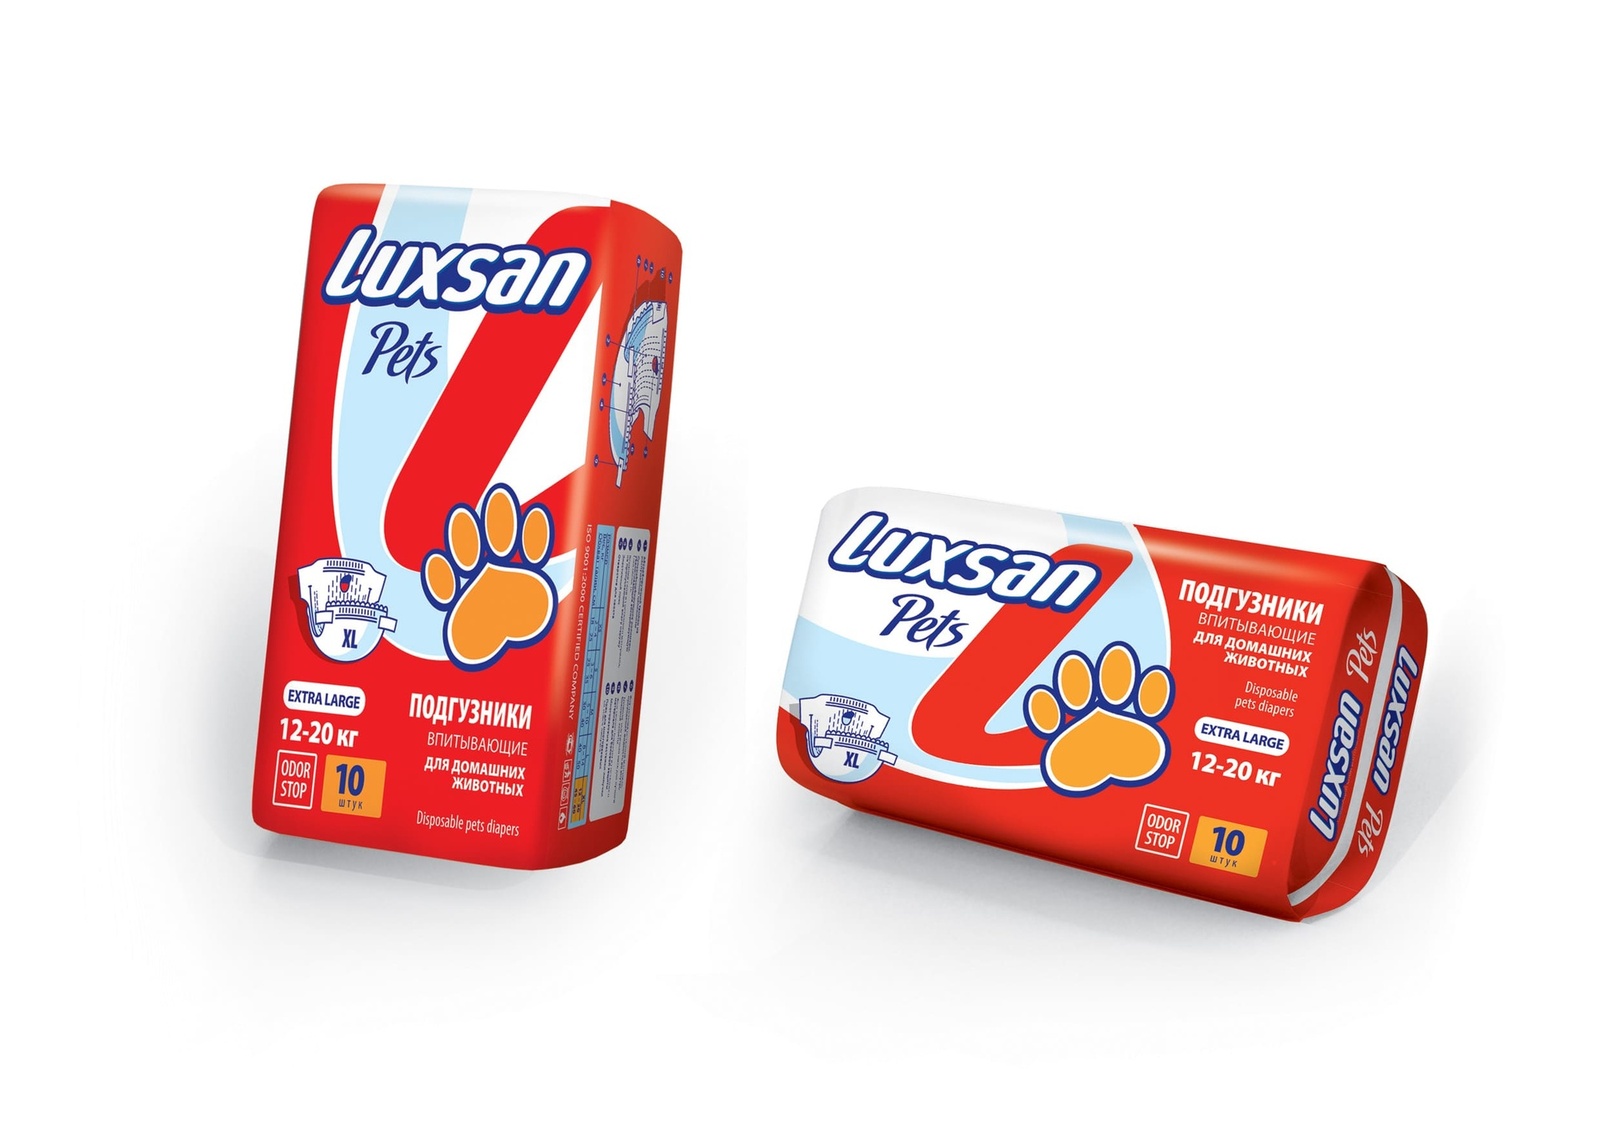 Luxsan Luxsan подгузники для животных: 12-20 кг, 10 шт. (340 г) luxsan пелёнка premium extra 60х60 10 12